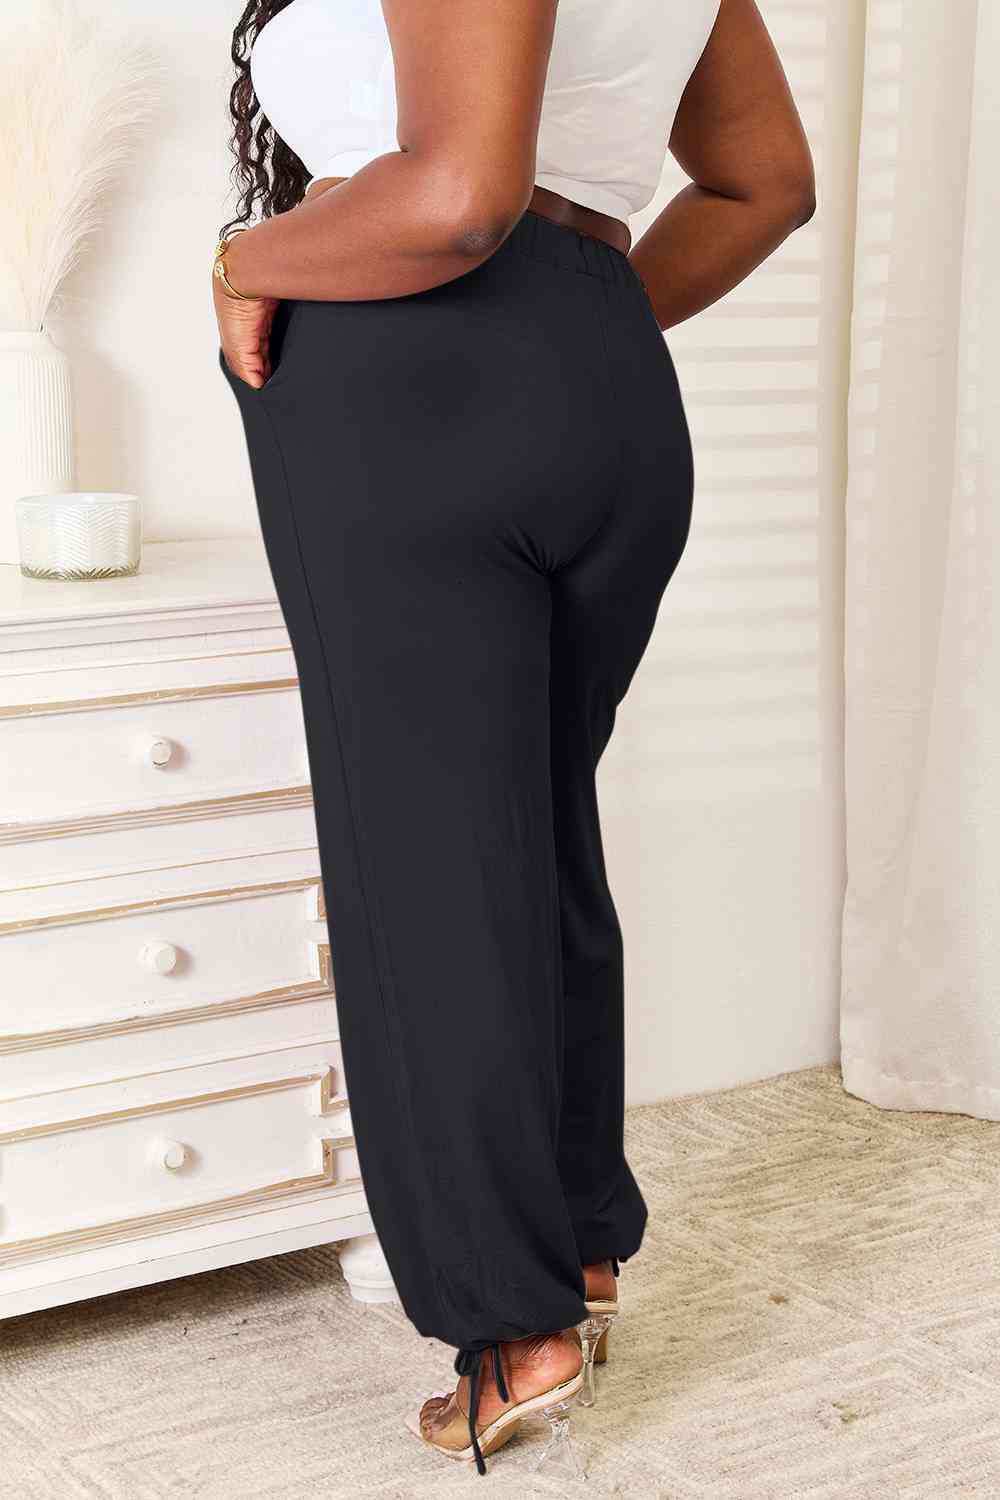 Basic Bae Pantalon taille haute en rayonne douce avec cordon de serrage et poches